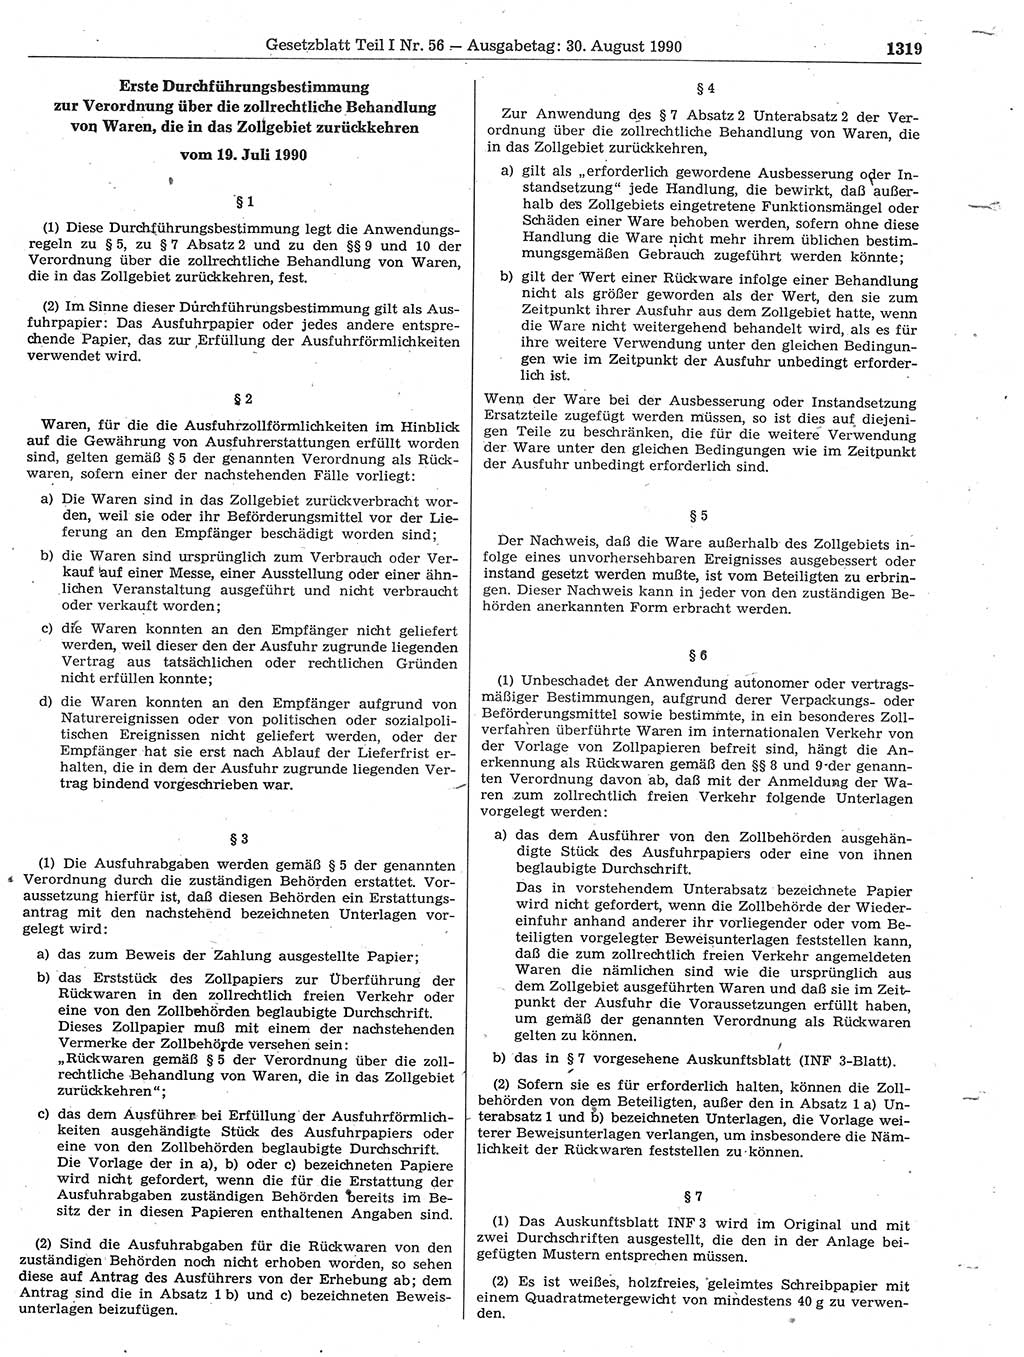 Gesetzblatt (GBl.) der Deutschen Demokratischen Republik (DDR) Teil Ⅰ 1990, Seite 1319 (GBl. DDR Ⅰ 1990, S. 1319)